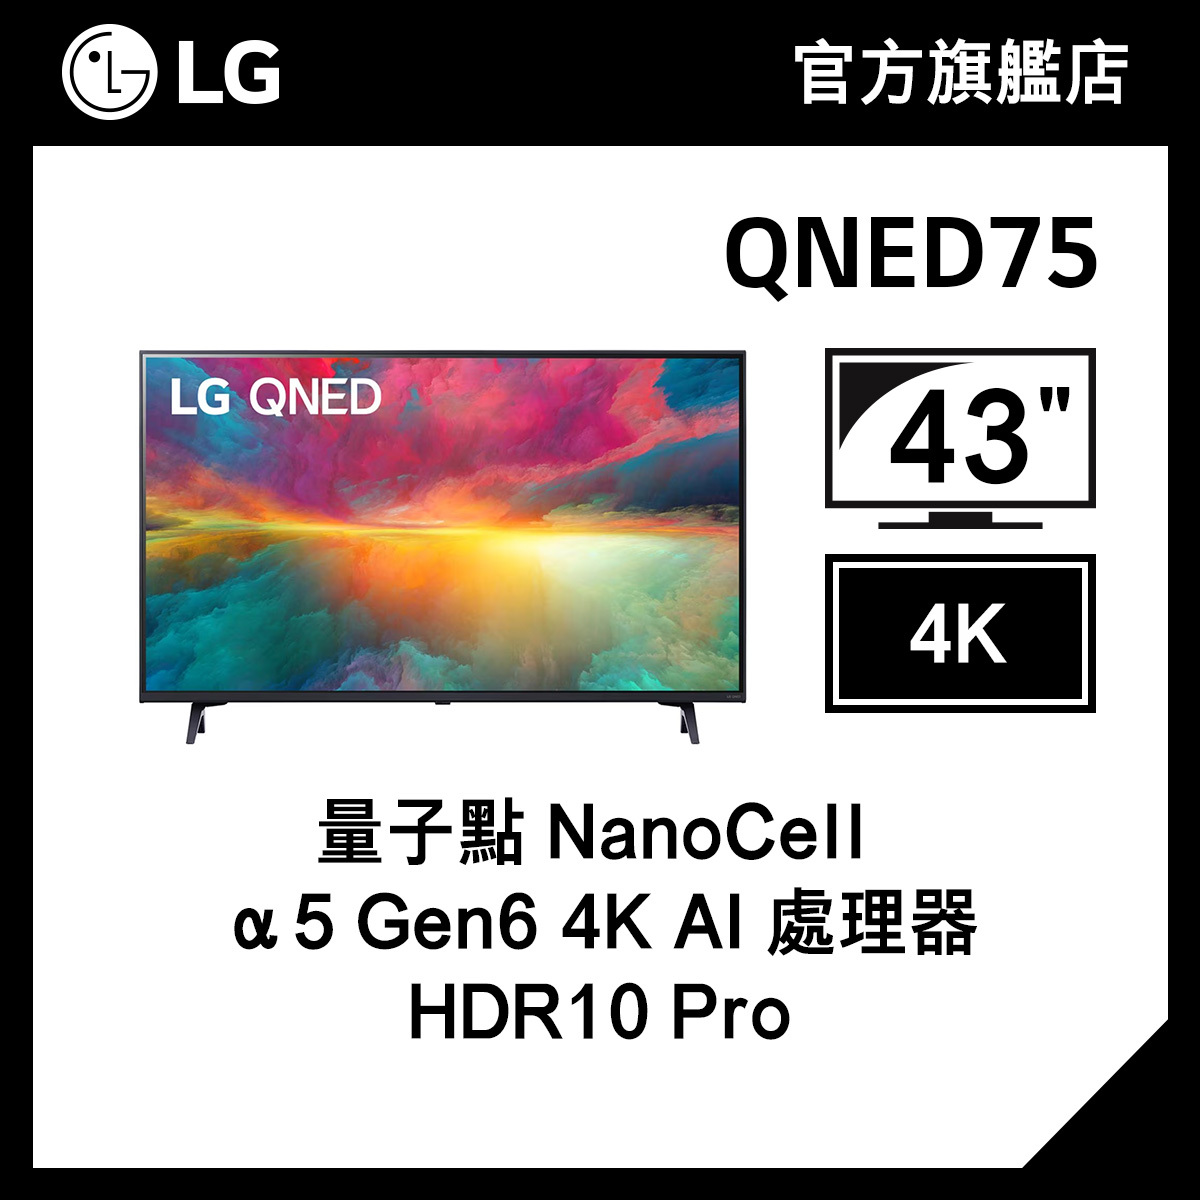 LG 43" QNED75 4K 智能電視